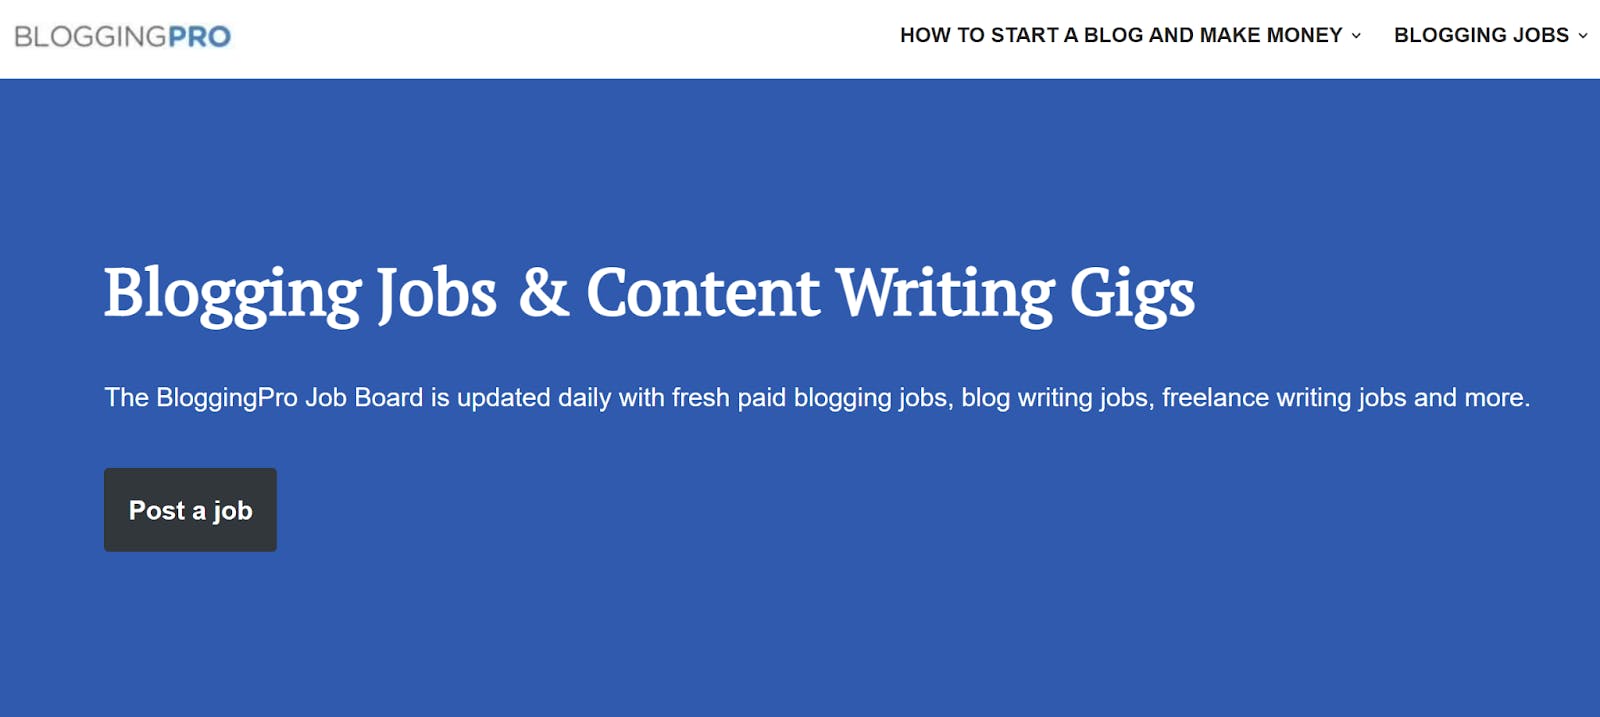 BloggingPro job board